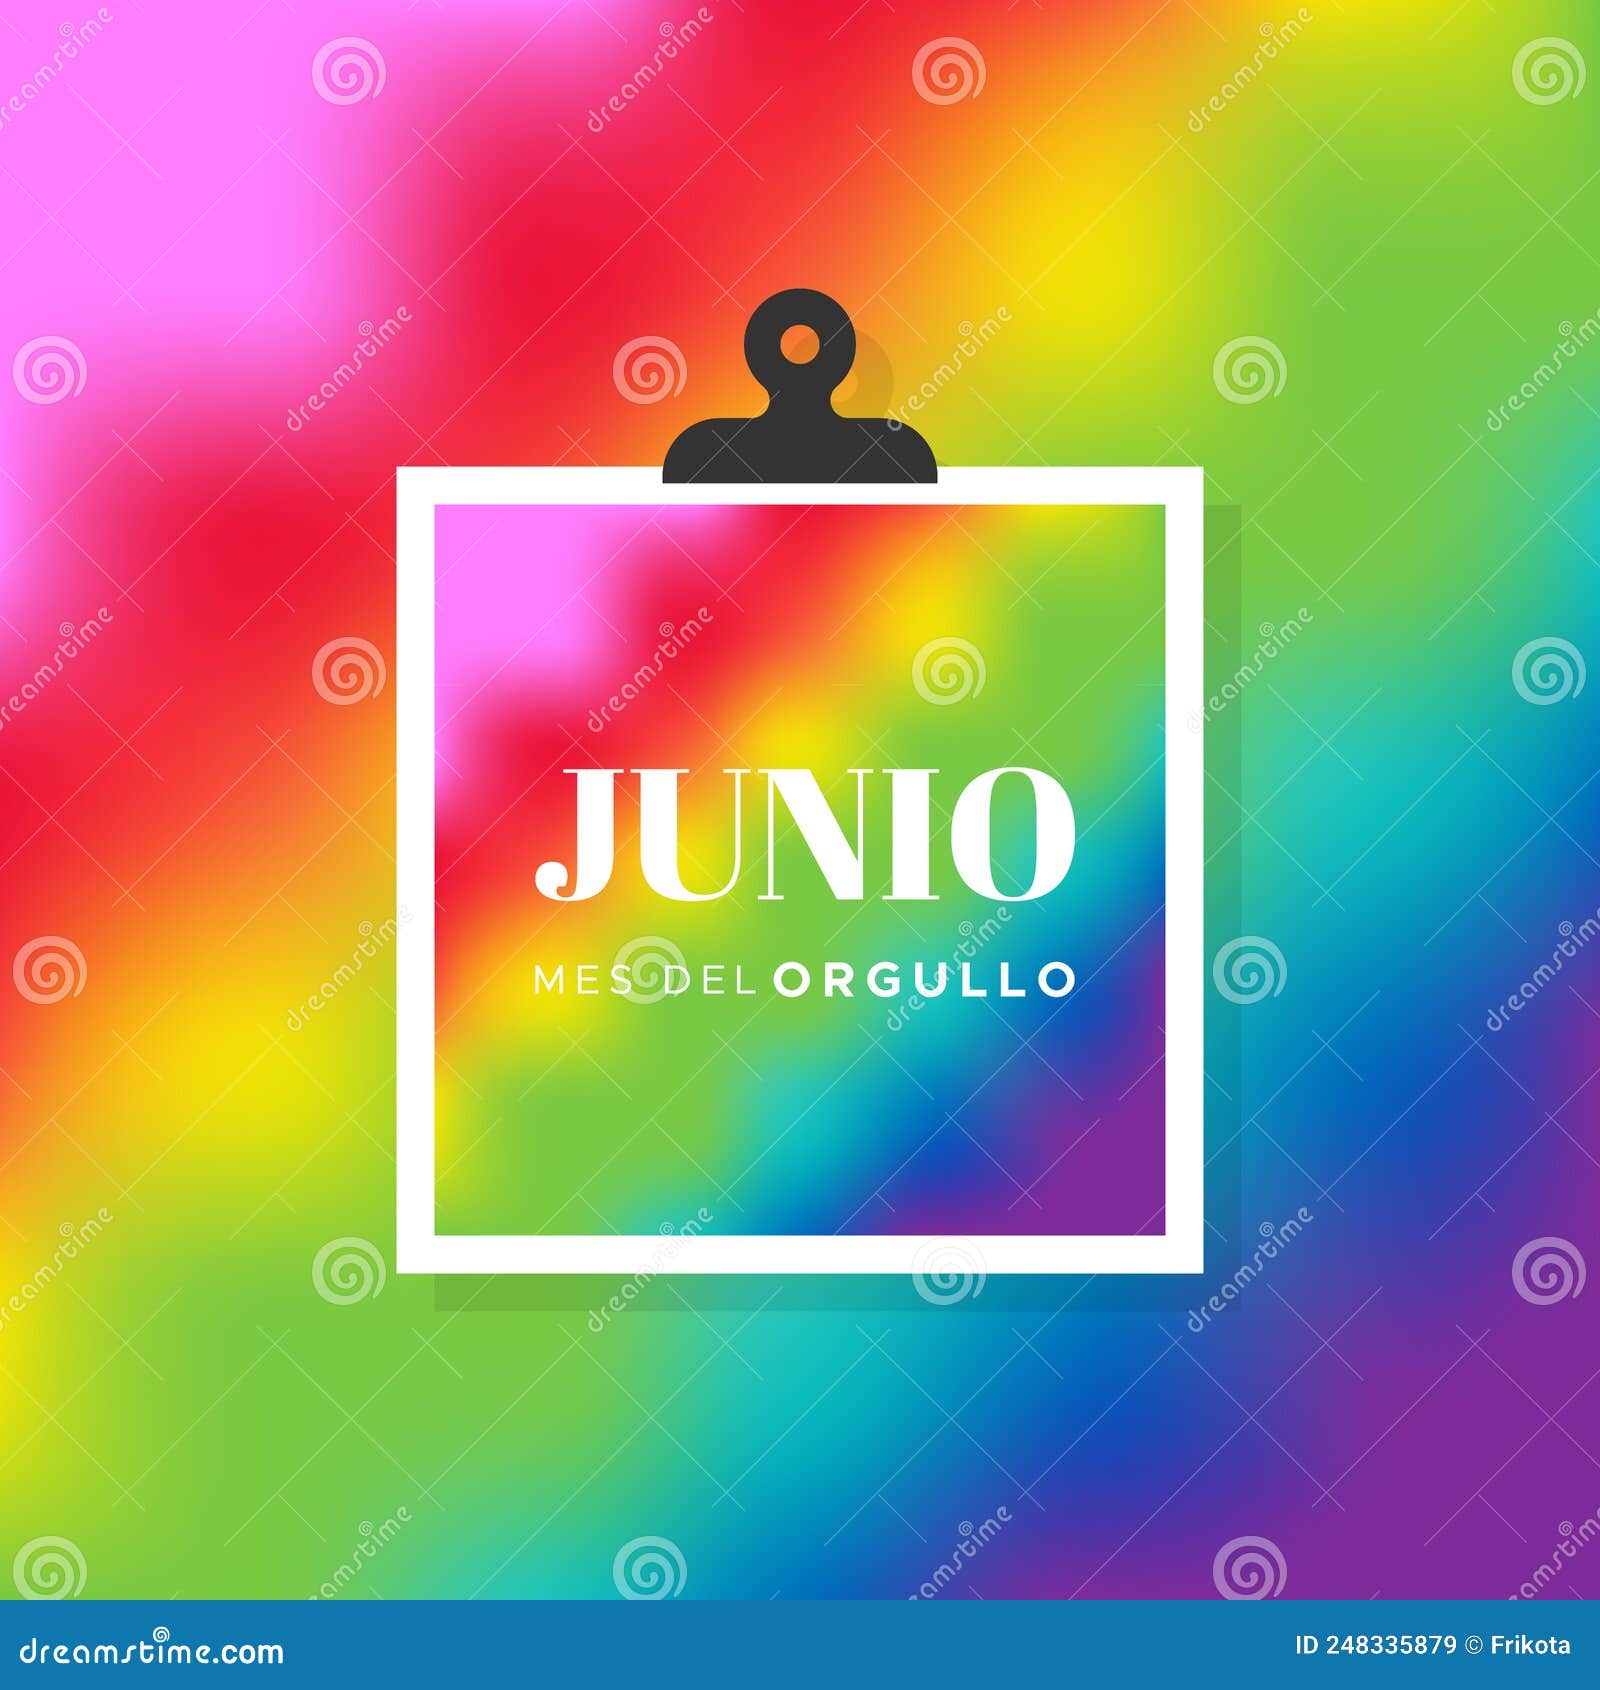 pride lgbtq multicolor tie dye background. june pride month. spanish. junio mes del orgullo.  , flat 